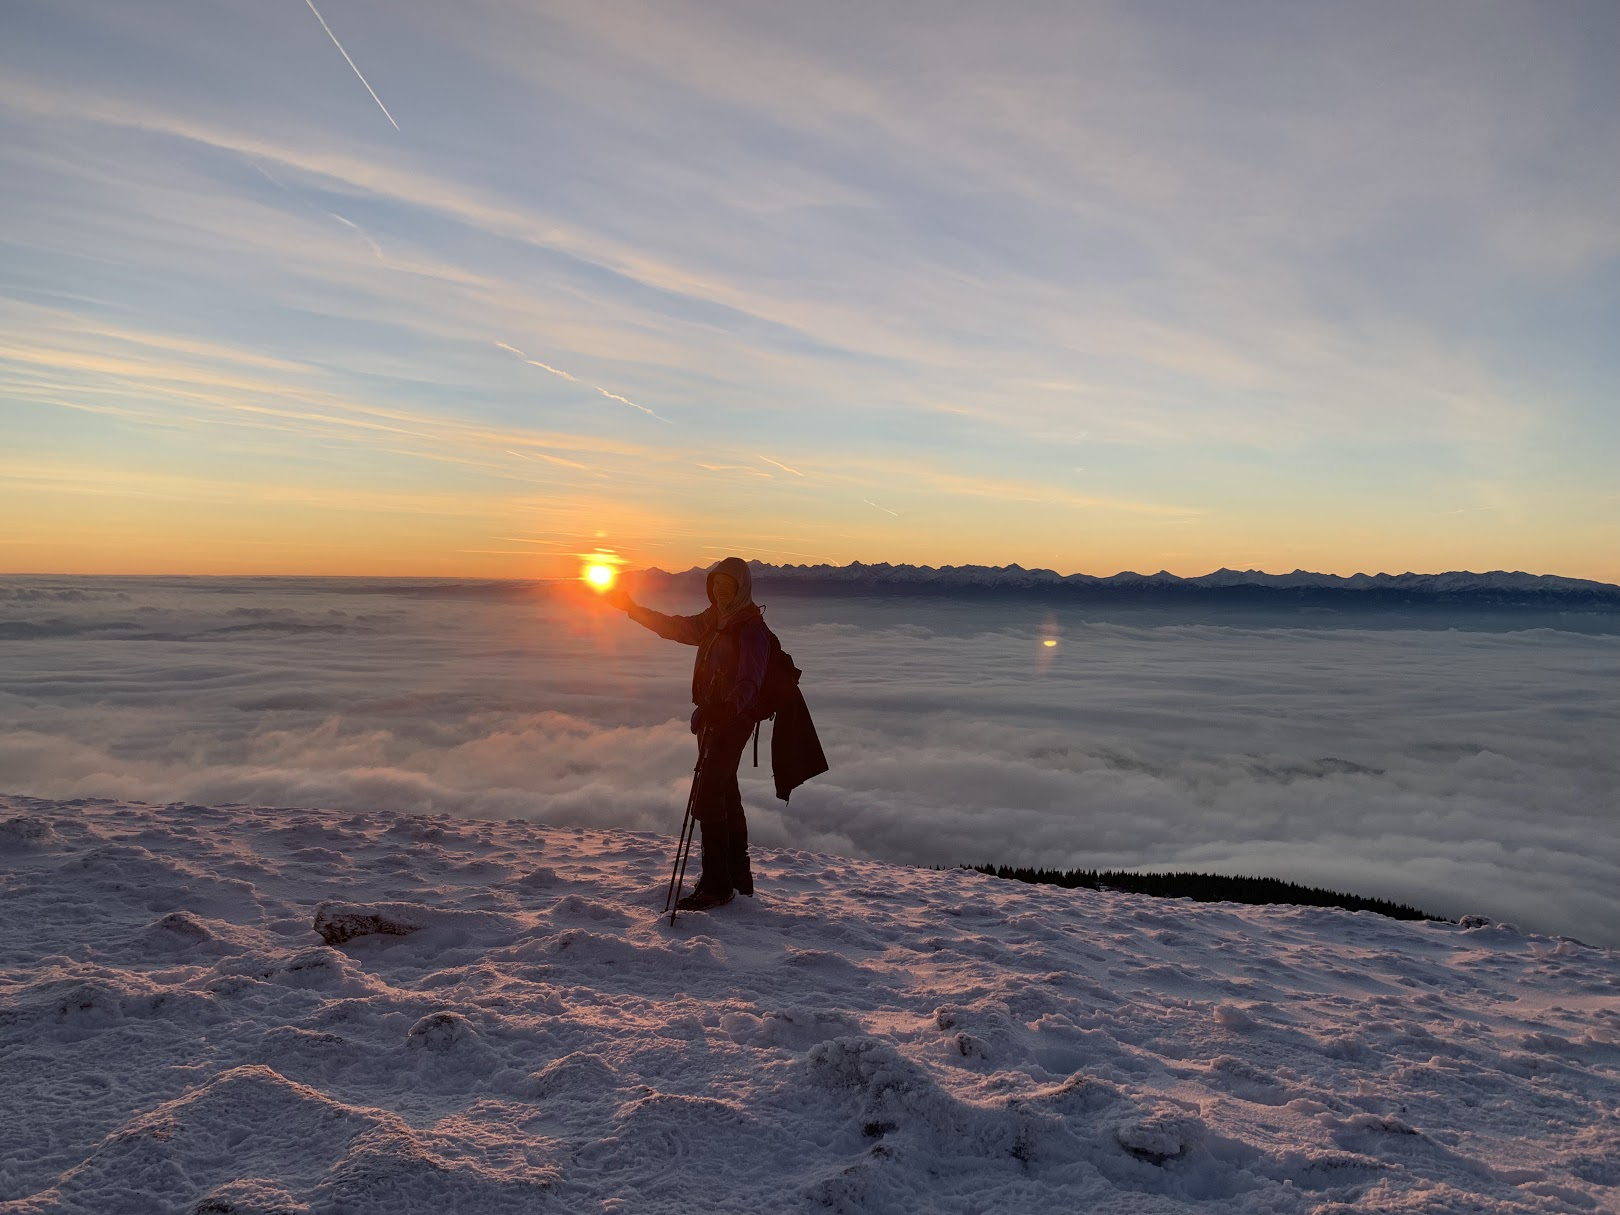 Winter sunrise at Mt. Babia Góra, Poland / Zimowy wschód słońca na Babiej Górze